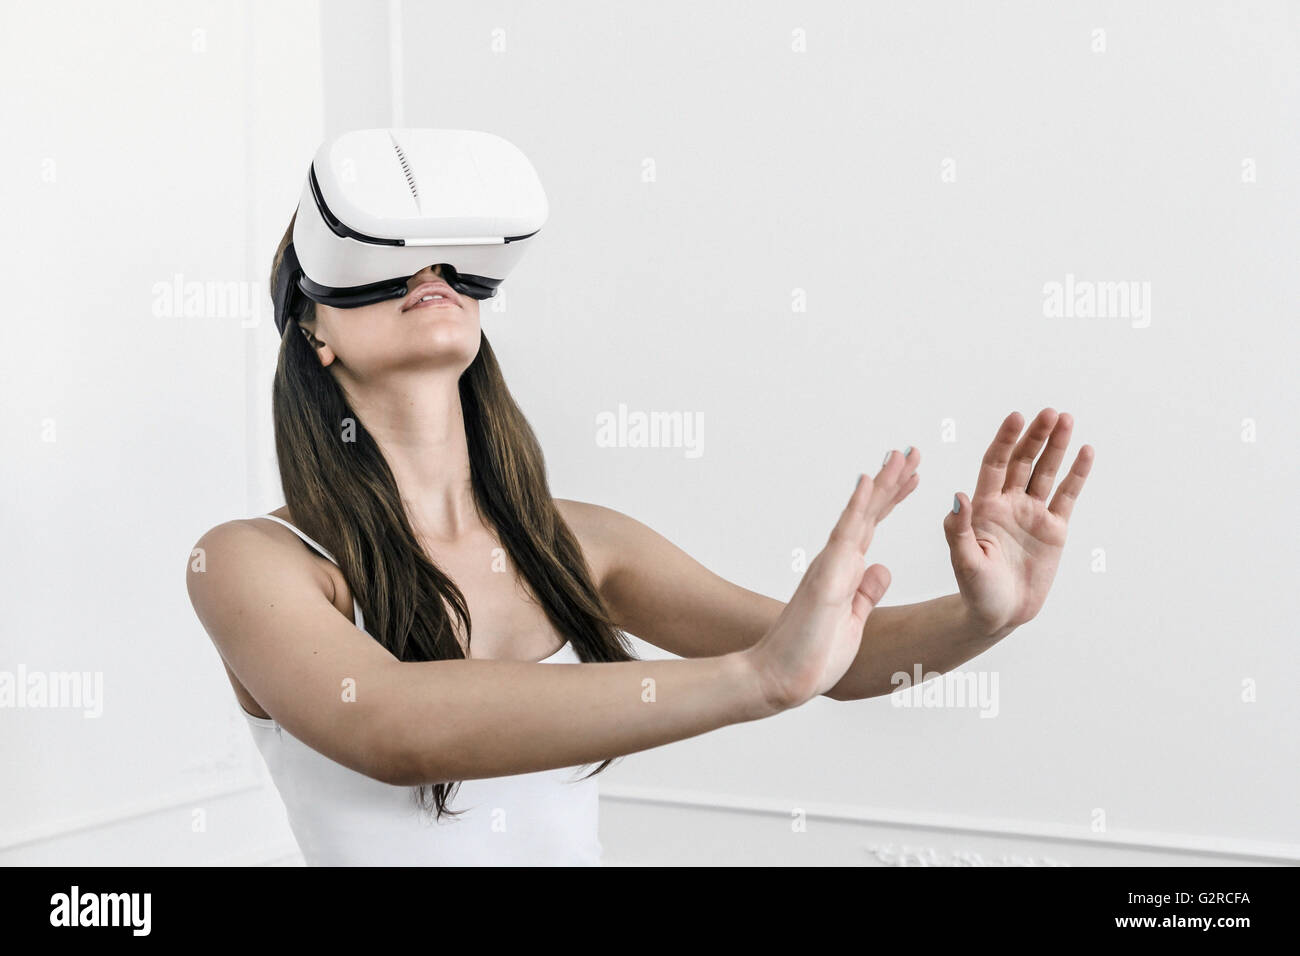 Eine junge weiße Frau mit dunklen Haaren steht mit zu fühlen und zu spüren, mit einer virtuellen Realität Heasdet auf dem Kopf ausgestreckten Armen Stockfoto